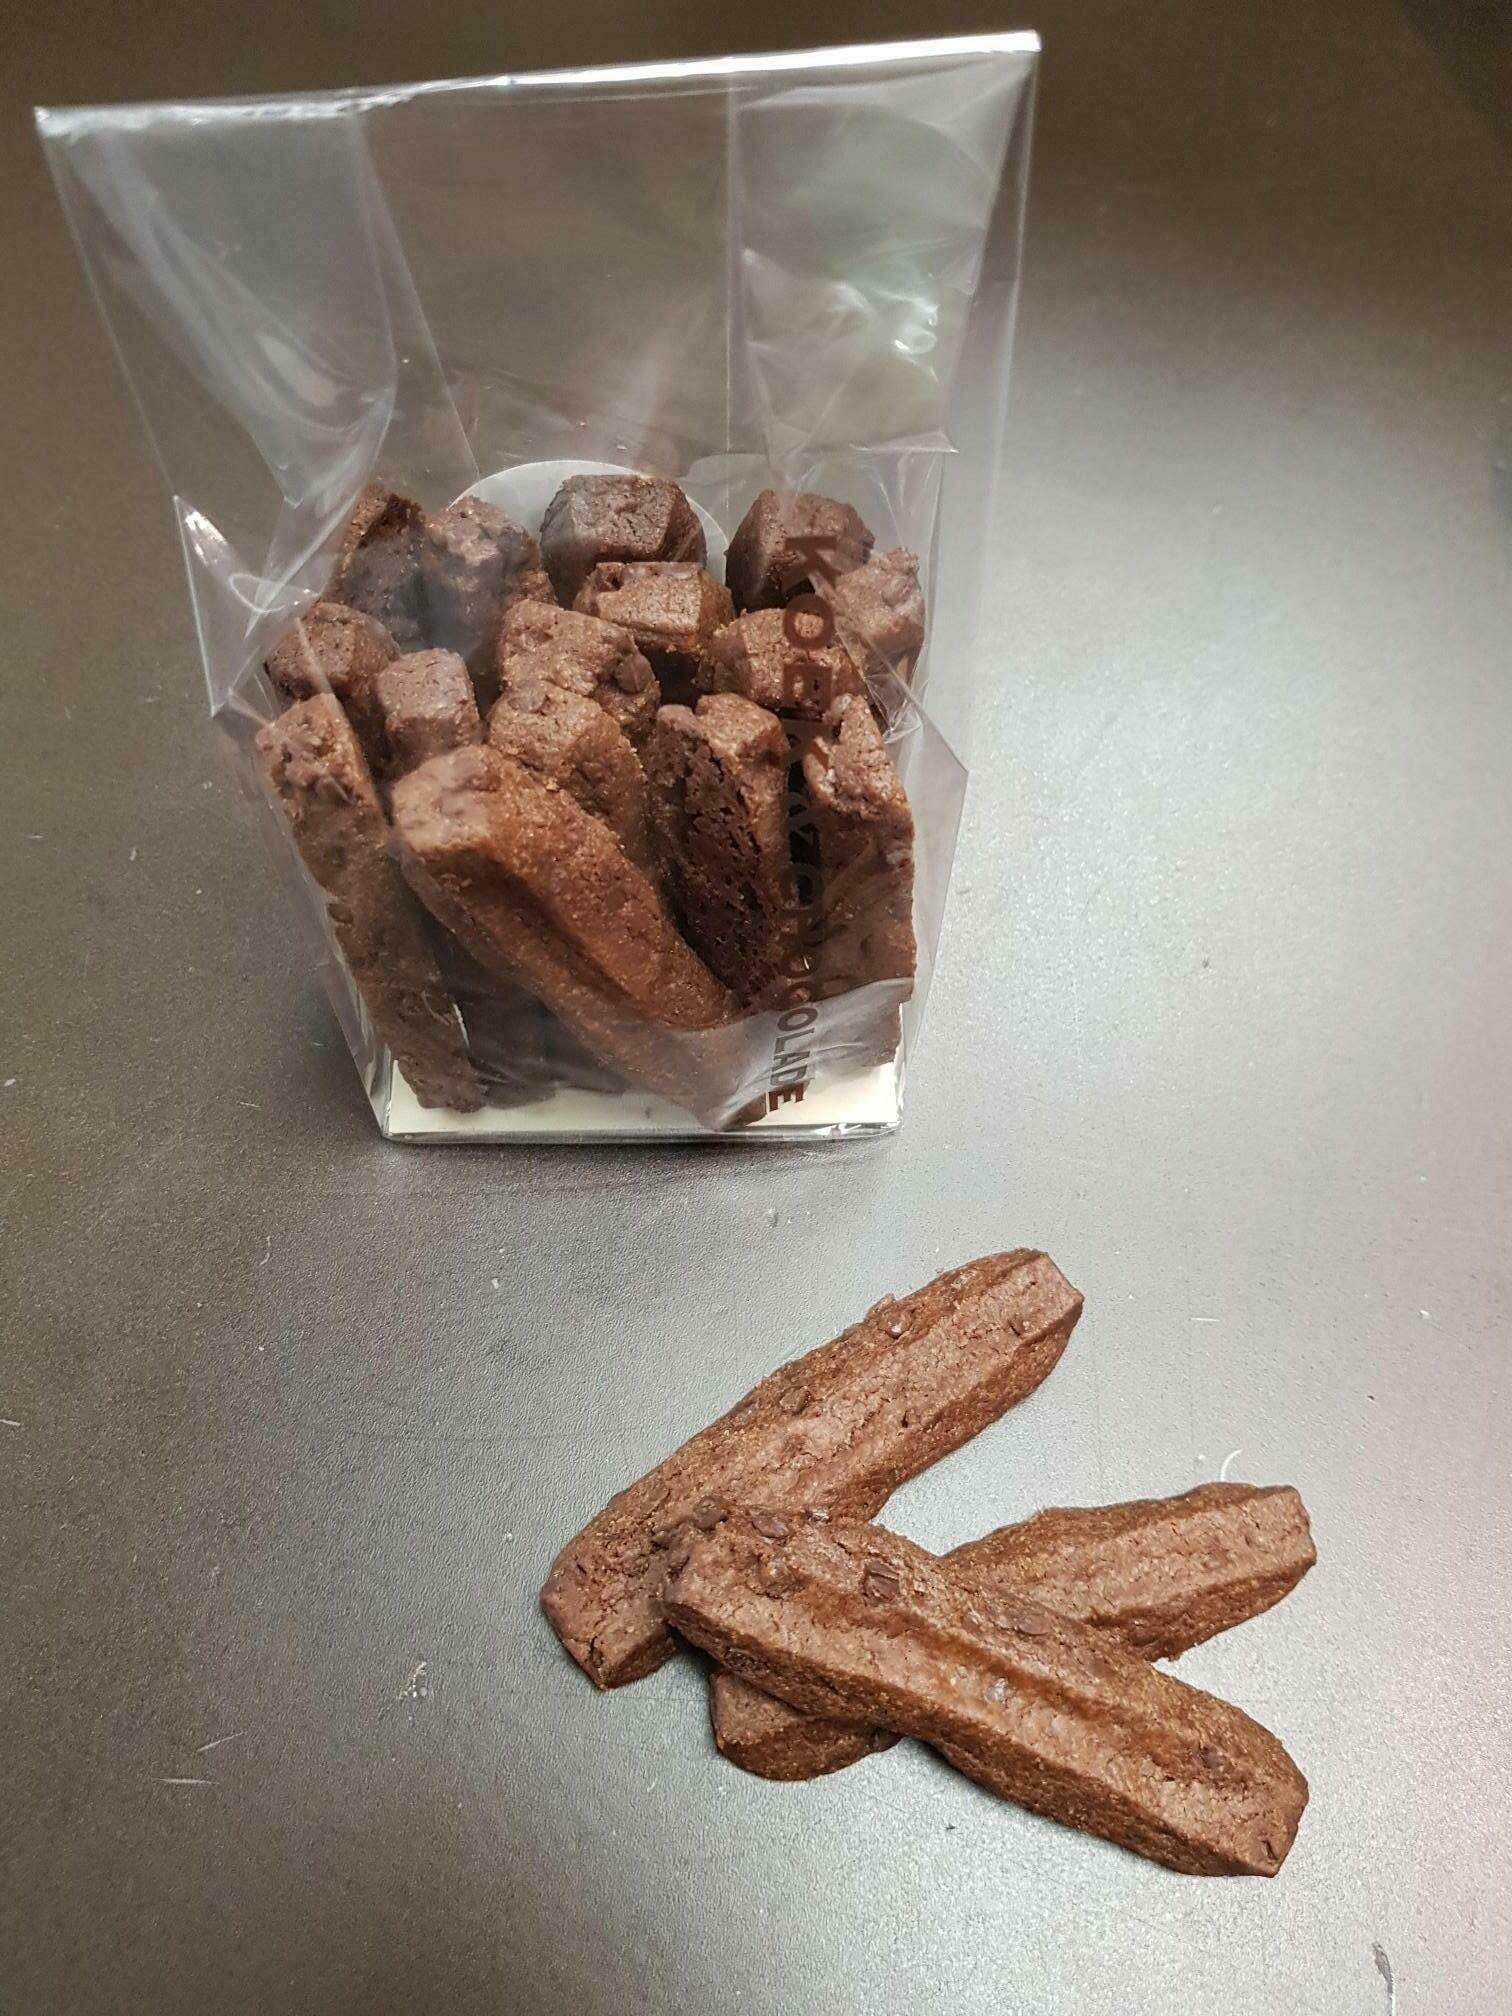 Brownie koekjes